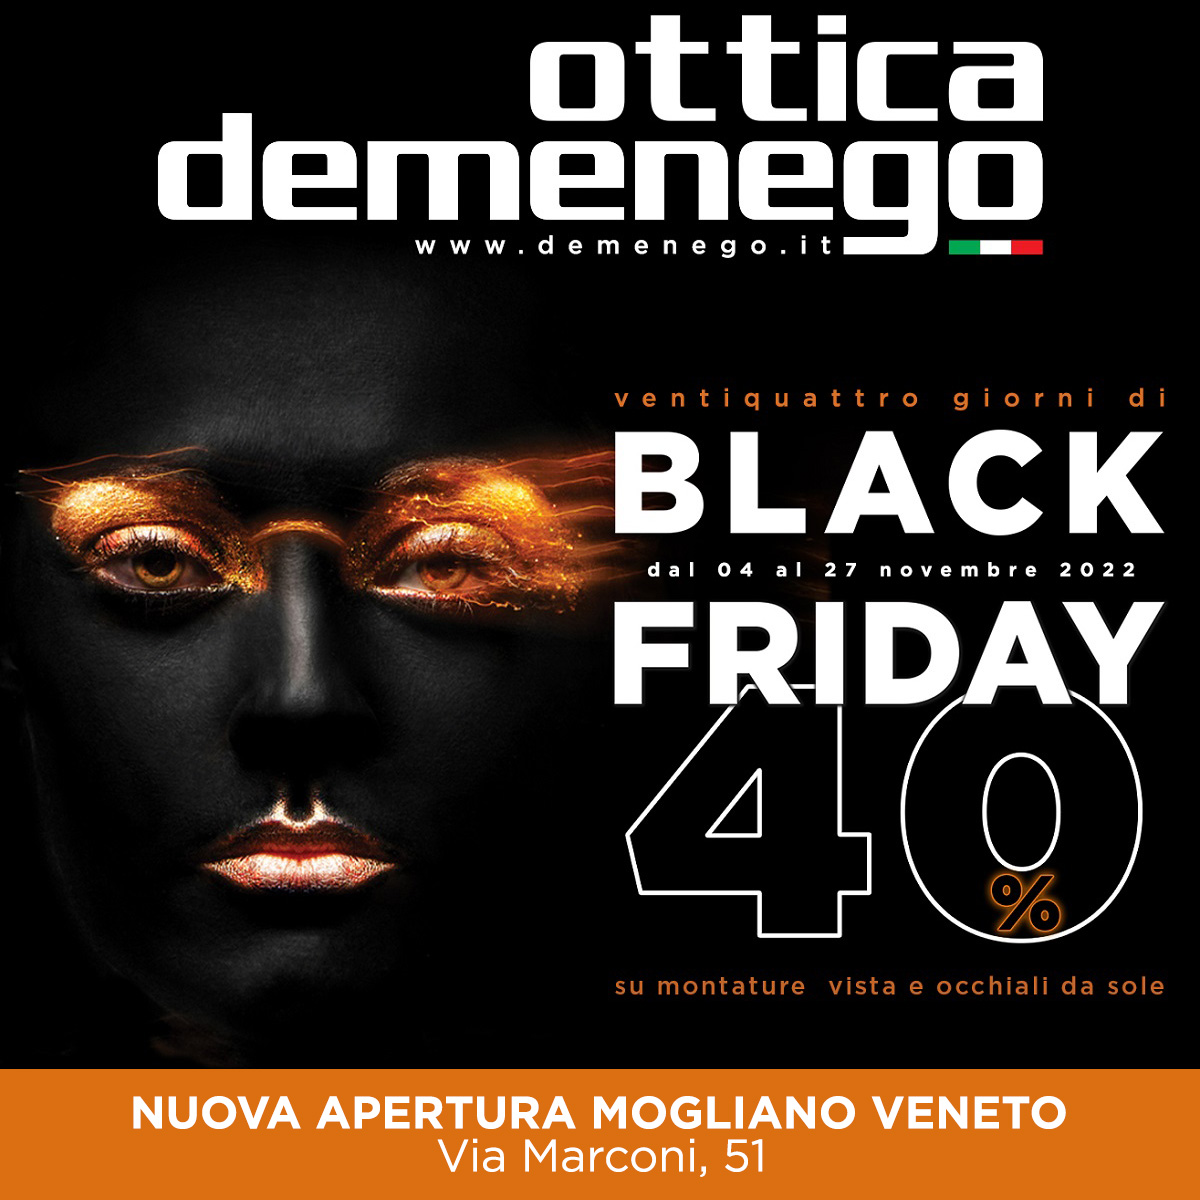 Nuova apertura Ottica Demenego a Mogliano Veneto